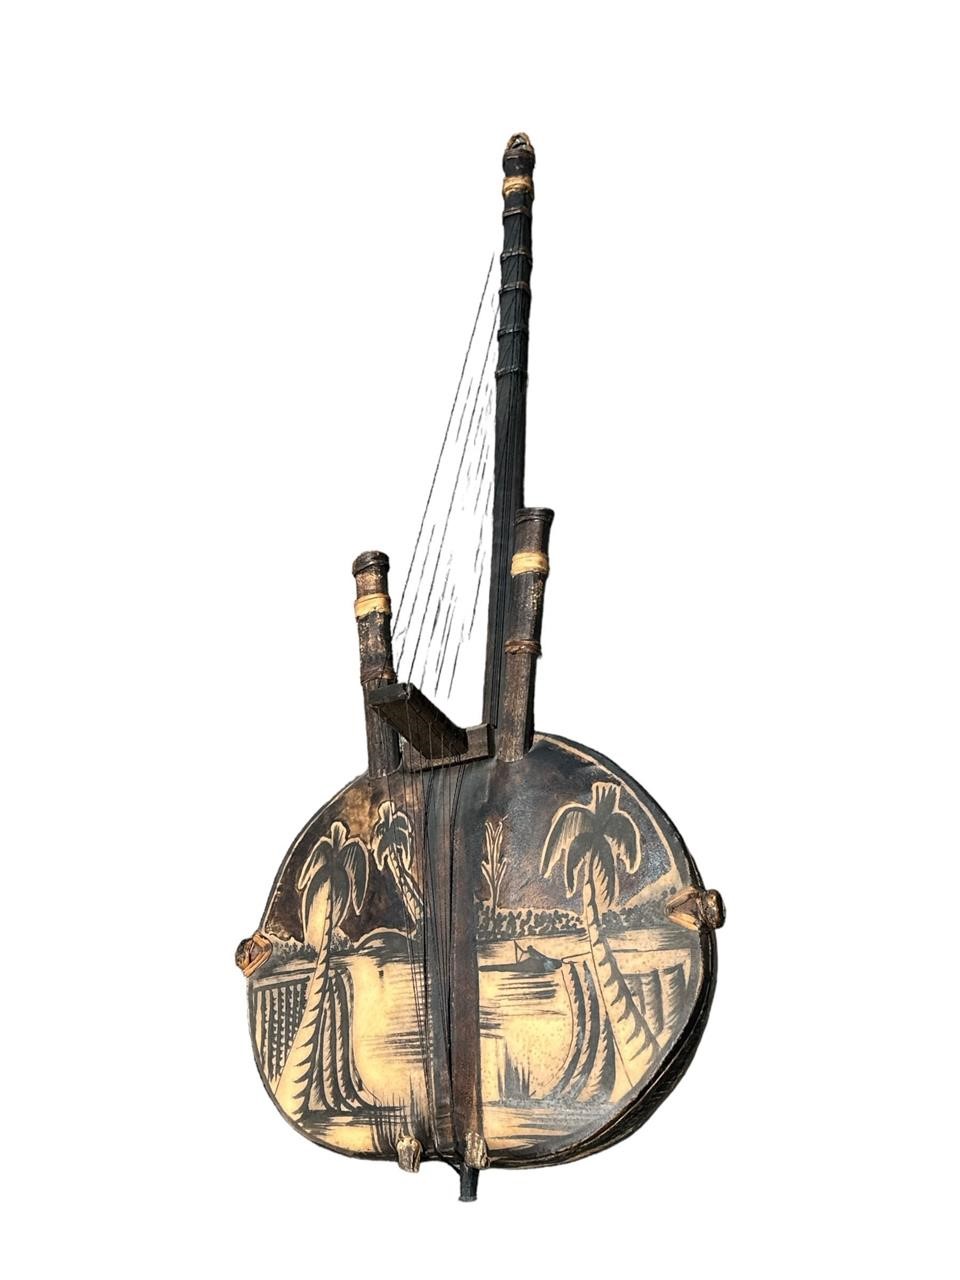 Carved African Banjo Instrument